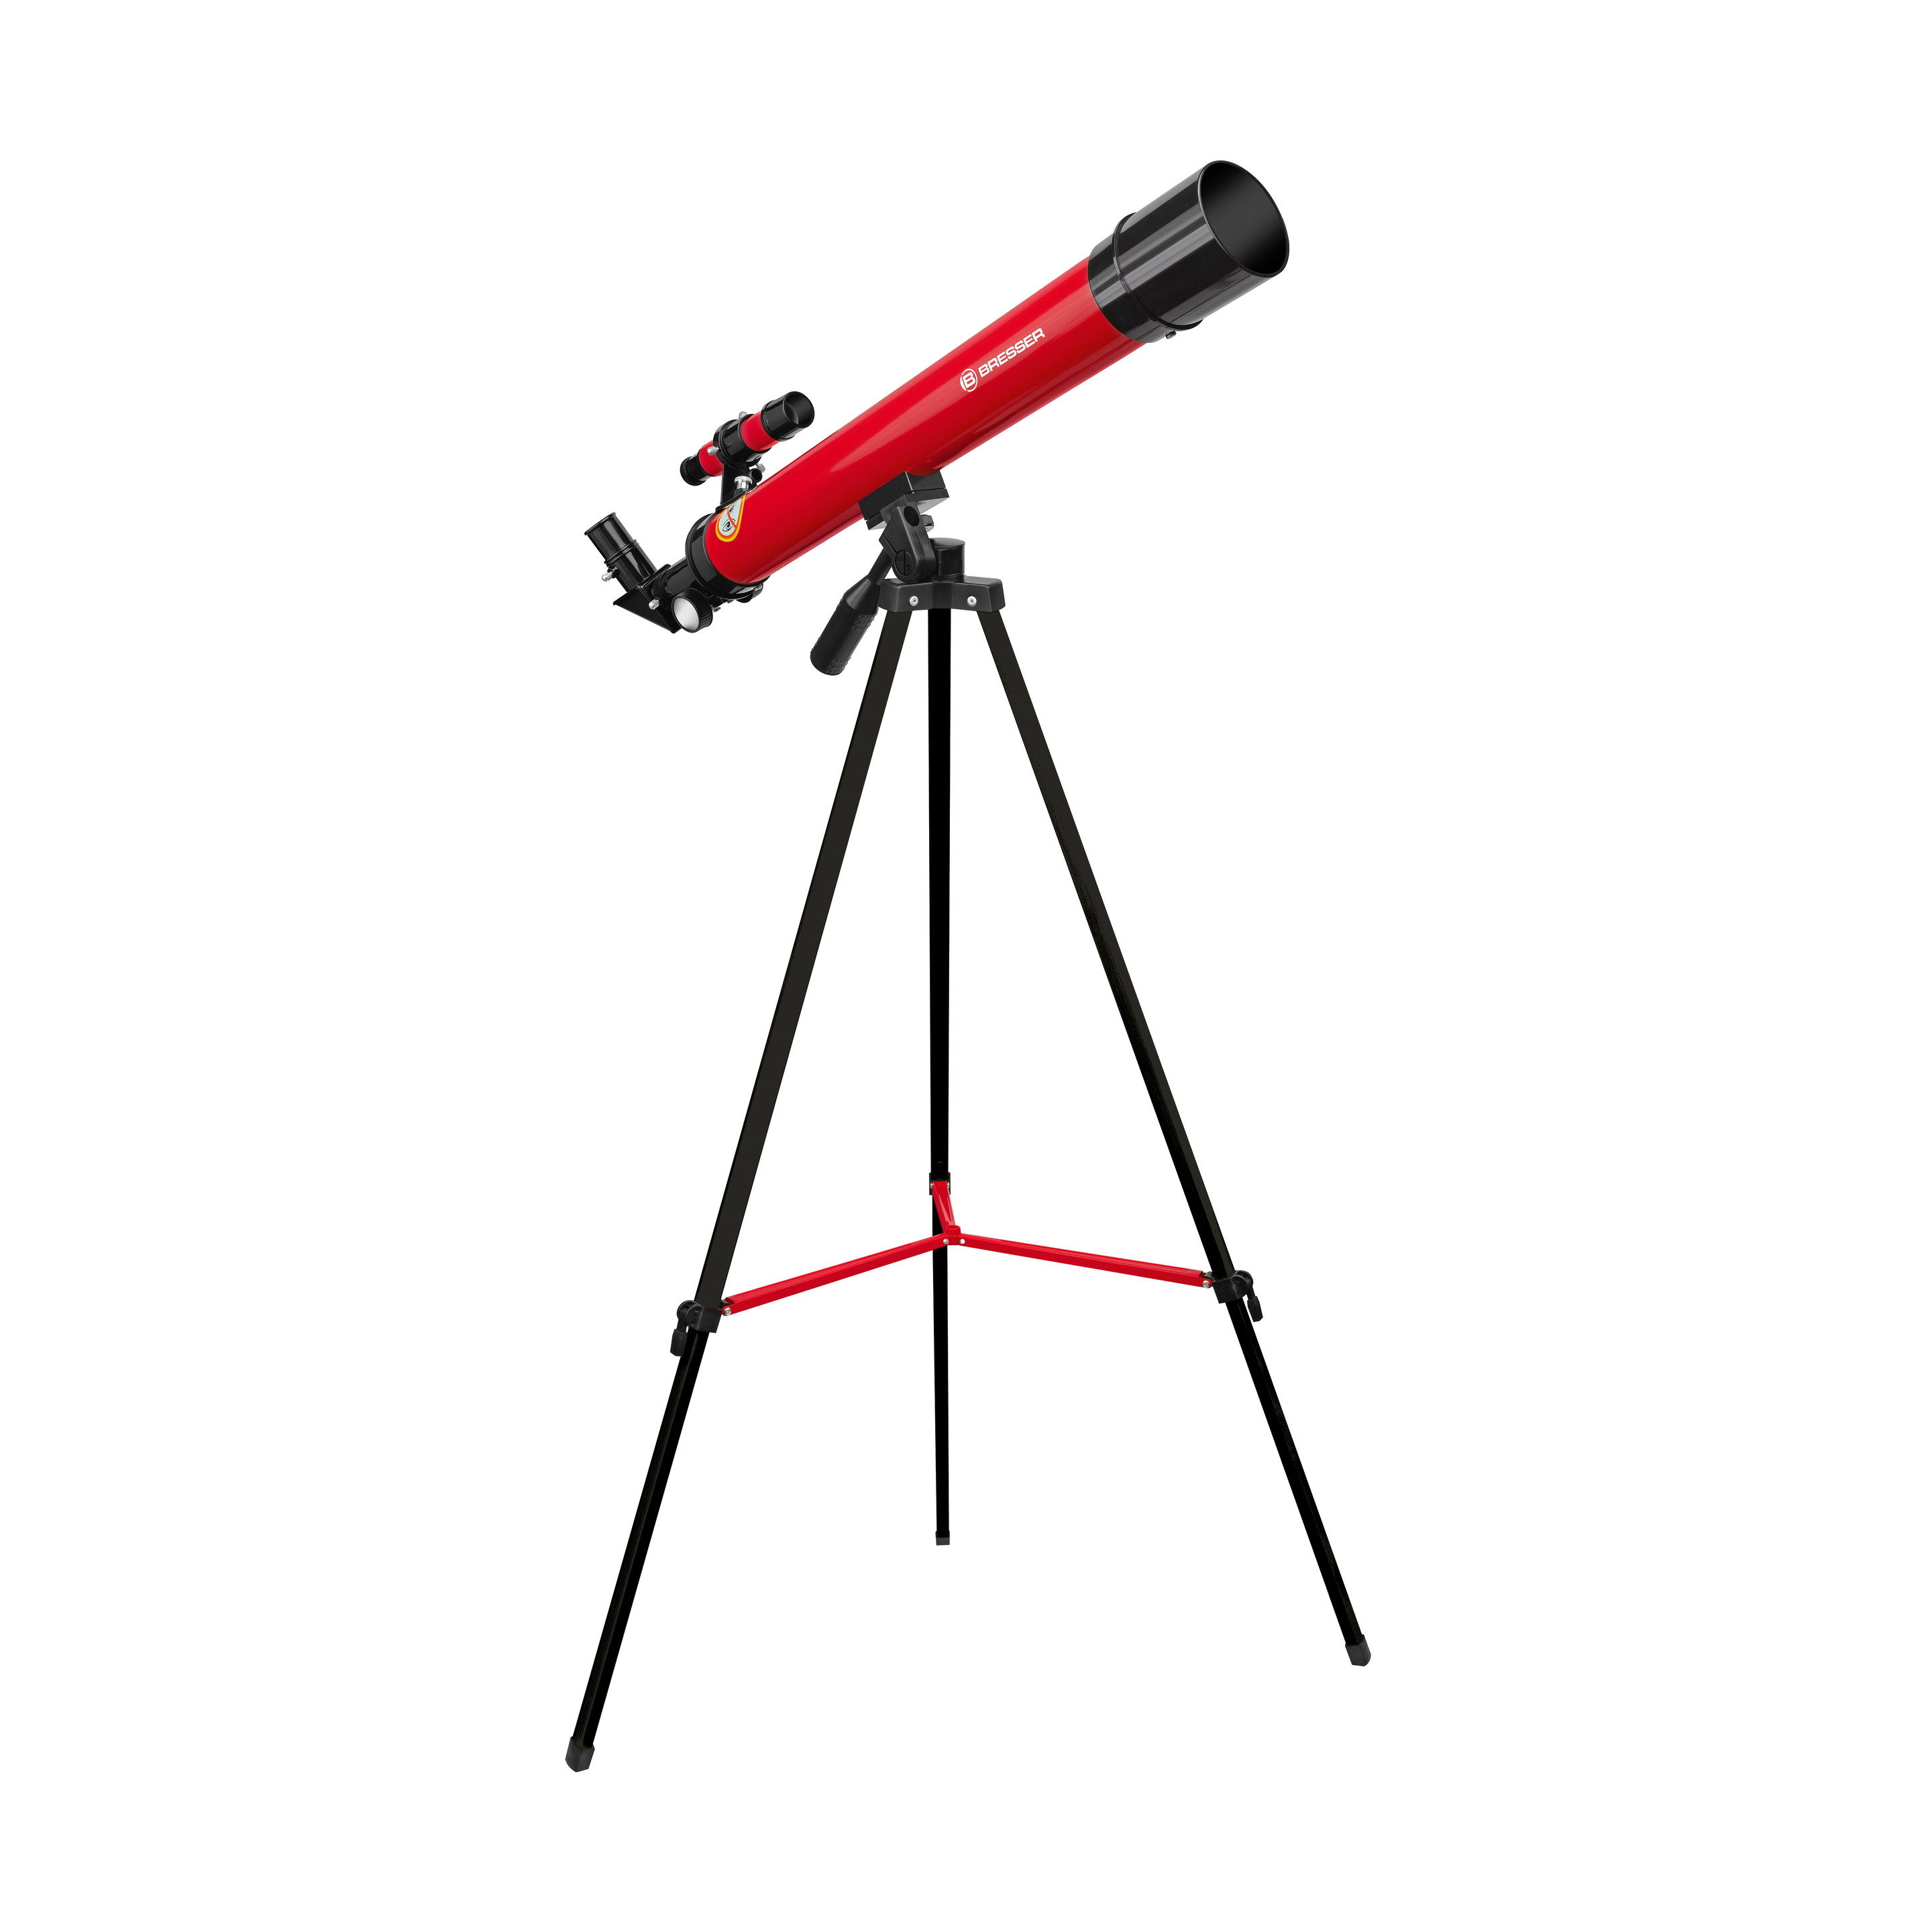 Telescópio Refractor Astronómico 45/600 Az Bresser Júnior - Vermelho | Sport Zone MKP